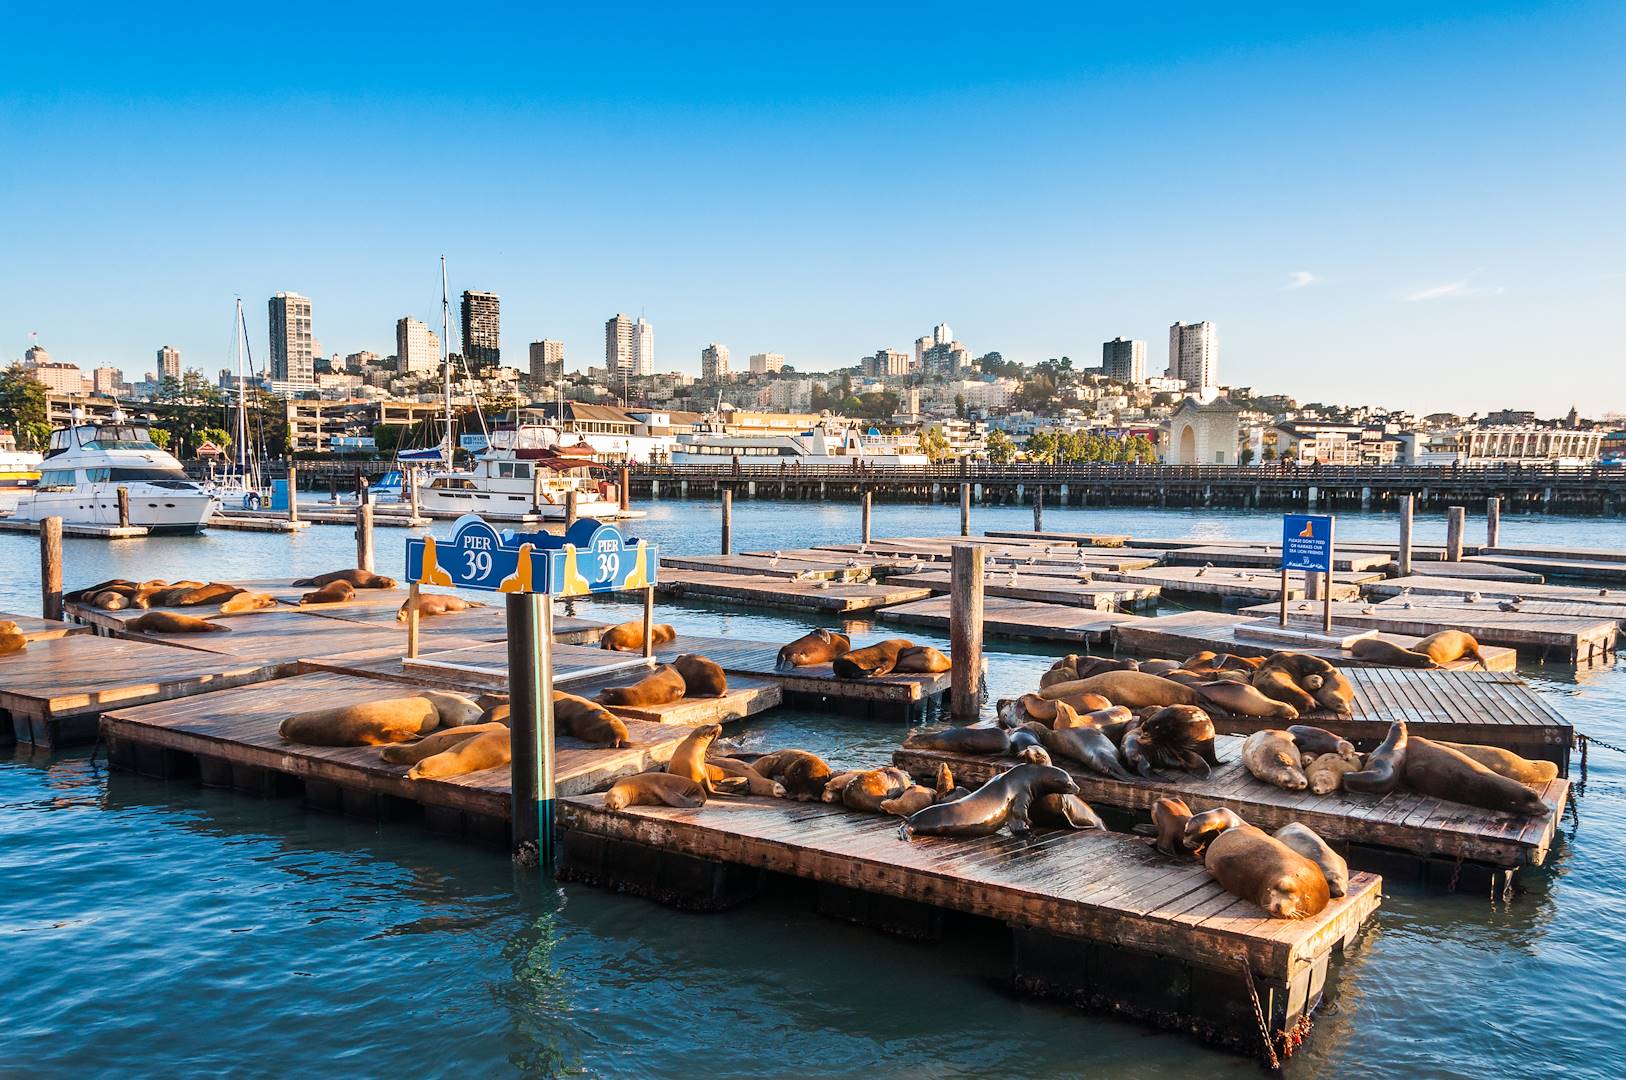 Les lions de mer de Fisherman's Wharf - San Francisco - Californie - États-Unis